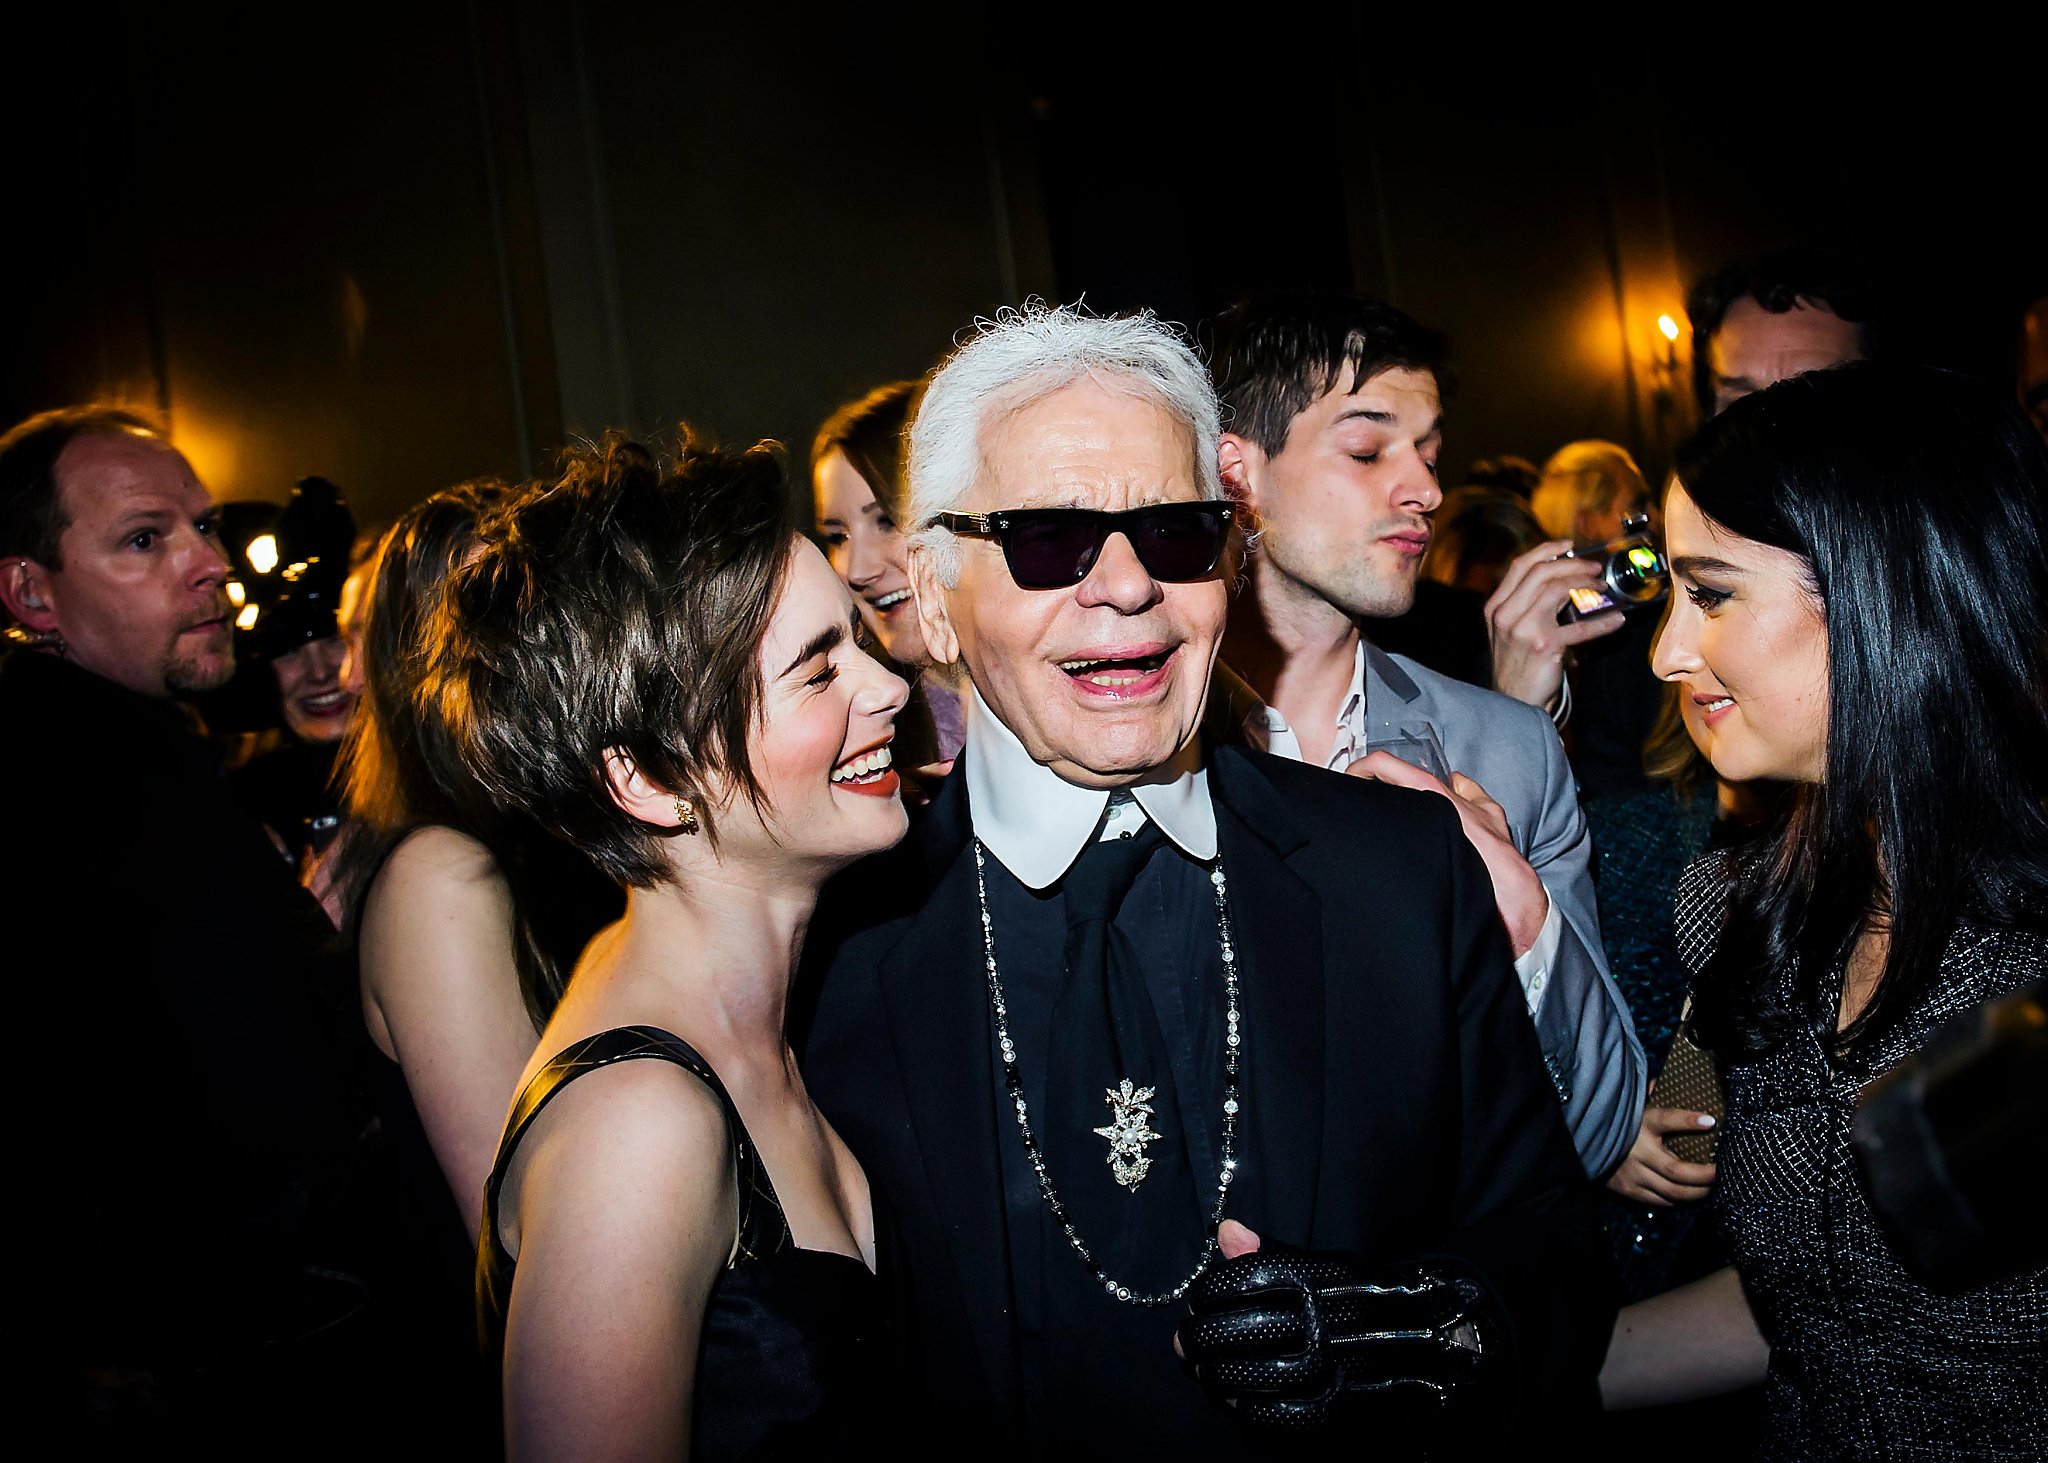 Karl Lagerfeld, designer who defined luxury fashion, dies in Paris